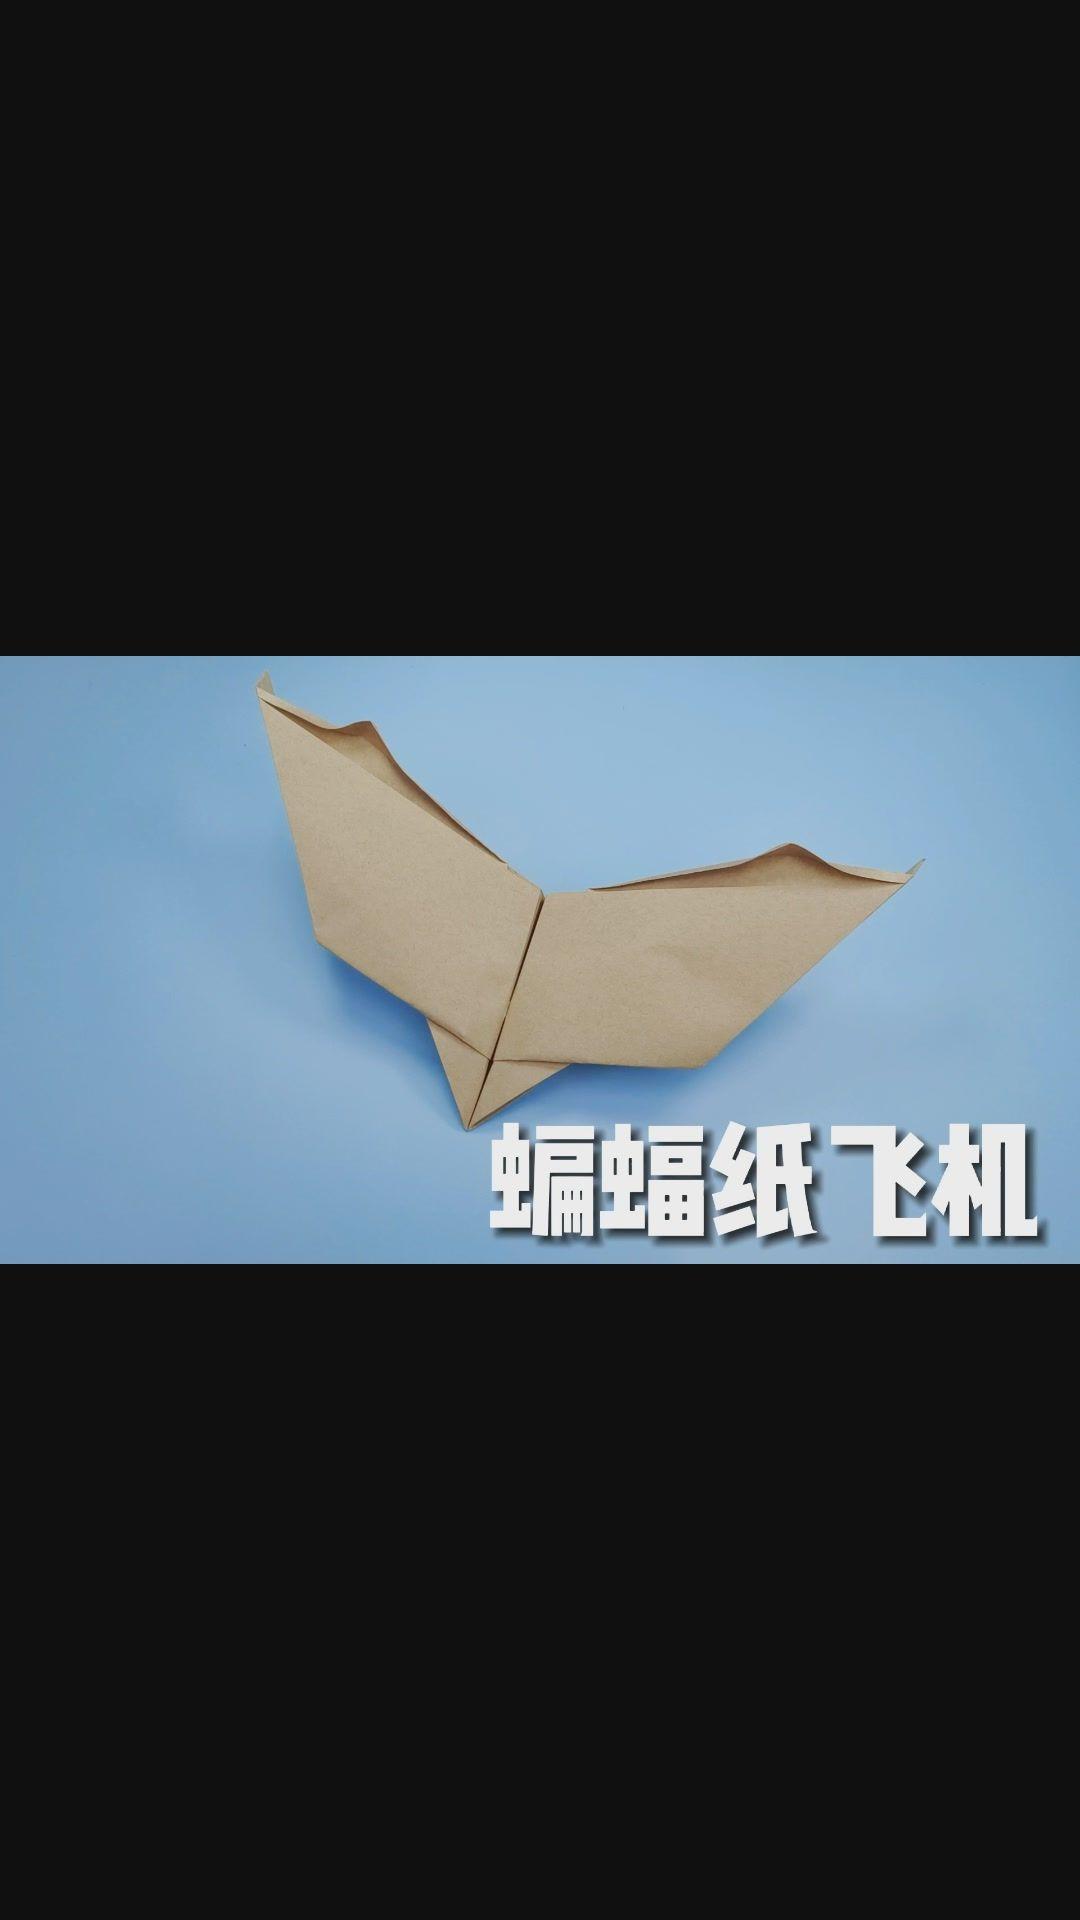 纸飞机大师的神作!飞行时像蝙蝠一样扇动翅膀,折法并不难!